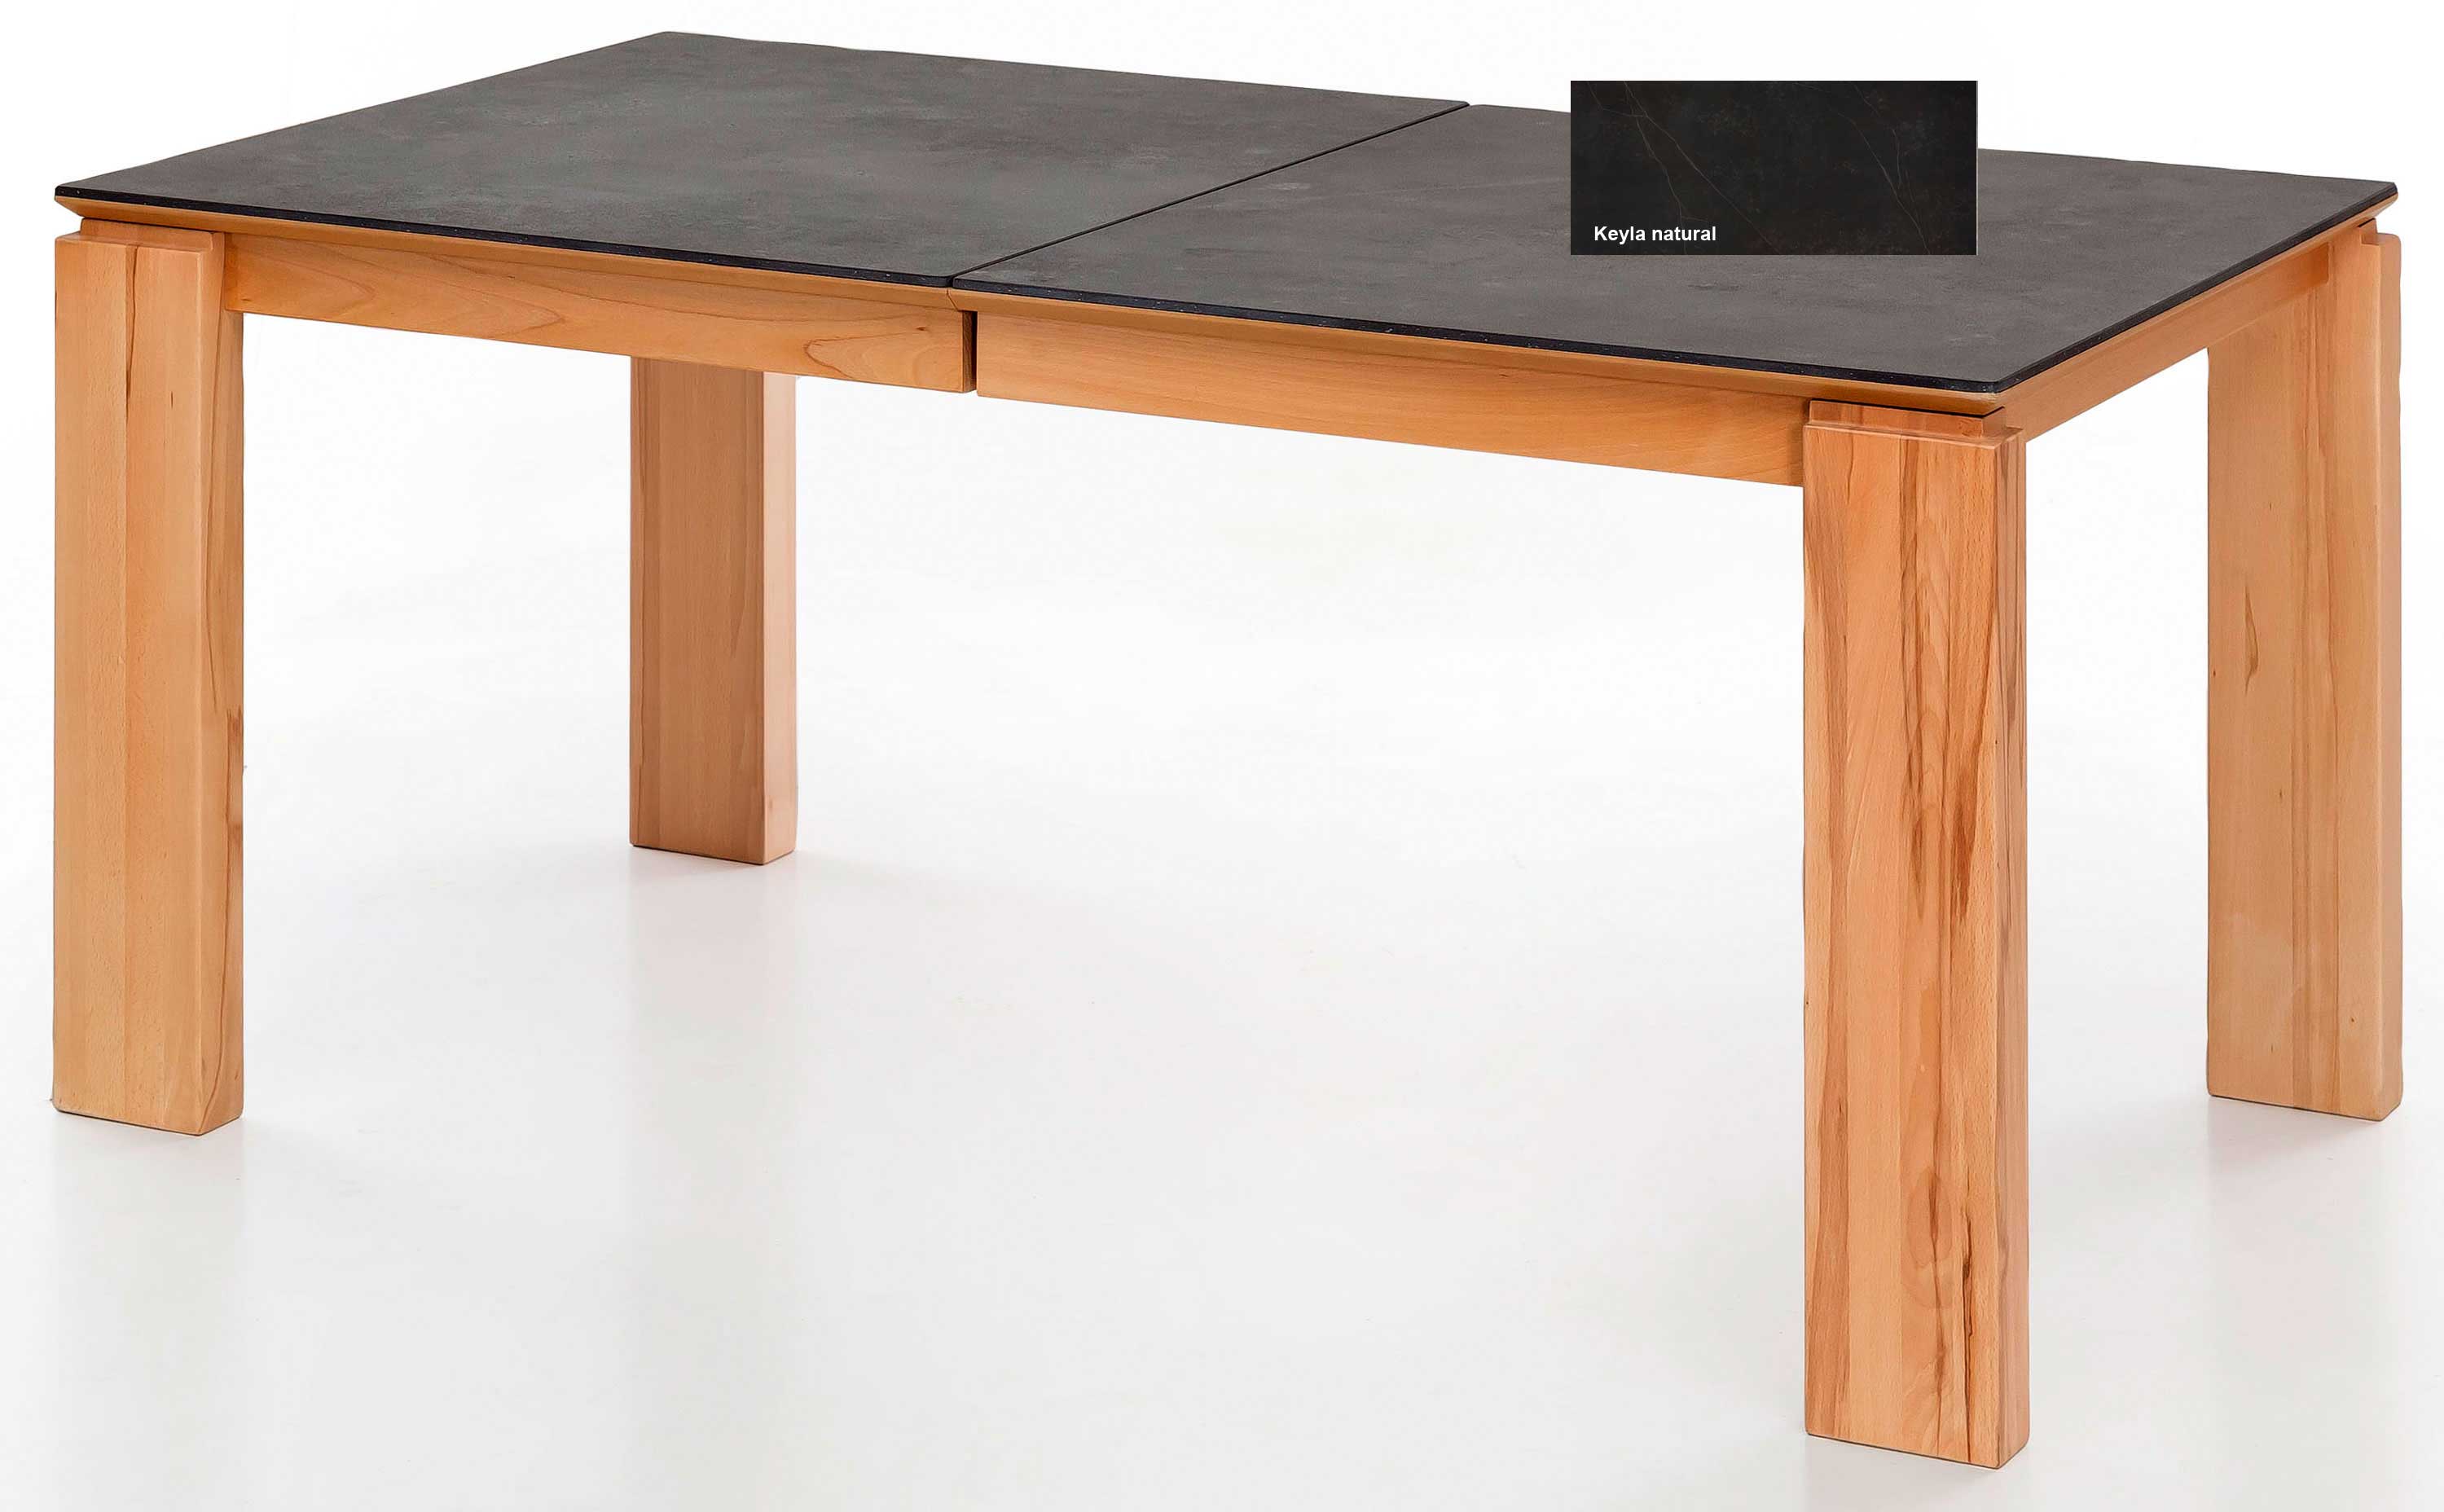 Standard Furniture Malaga Massivholztisch ausziehbar mit Dektonplatte Keyla